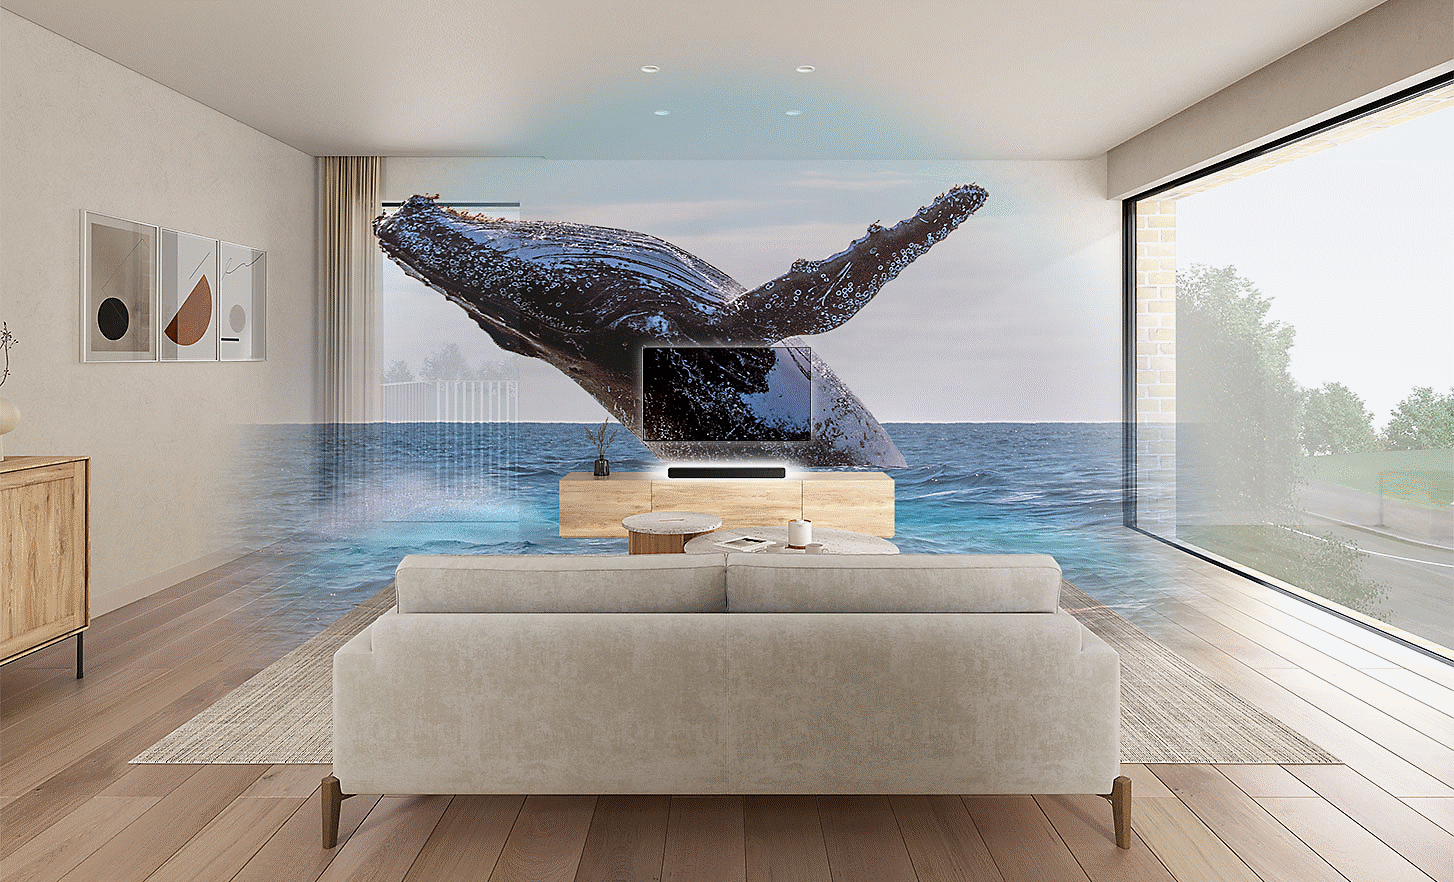 ภาพห้องนั่งเล่นที่มีทีวีและ Soundbar HT-S2000 อยู่ตรงกลาง มีภาพลายน้ำของวาฬอยู่ด้านบน